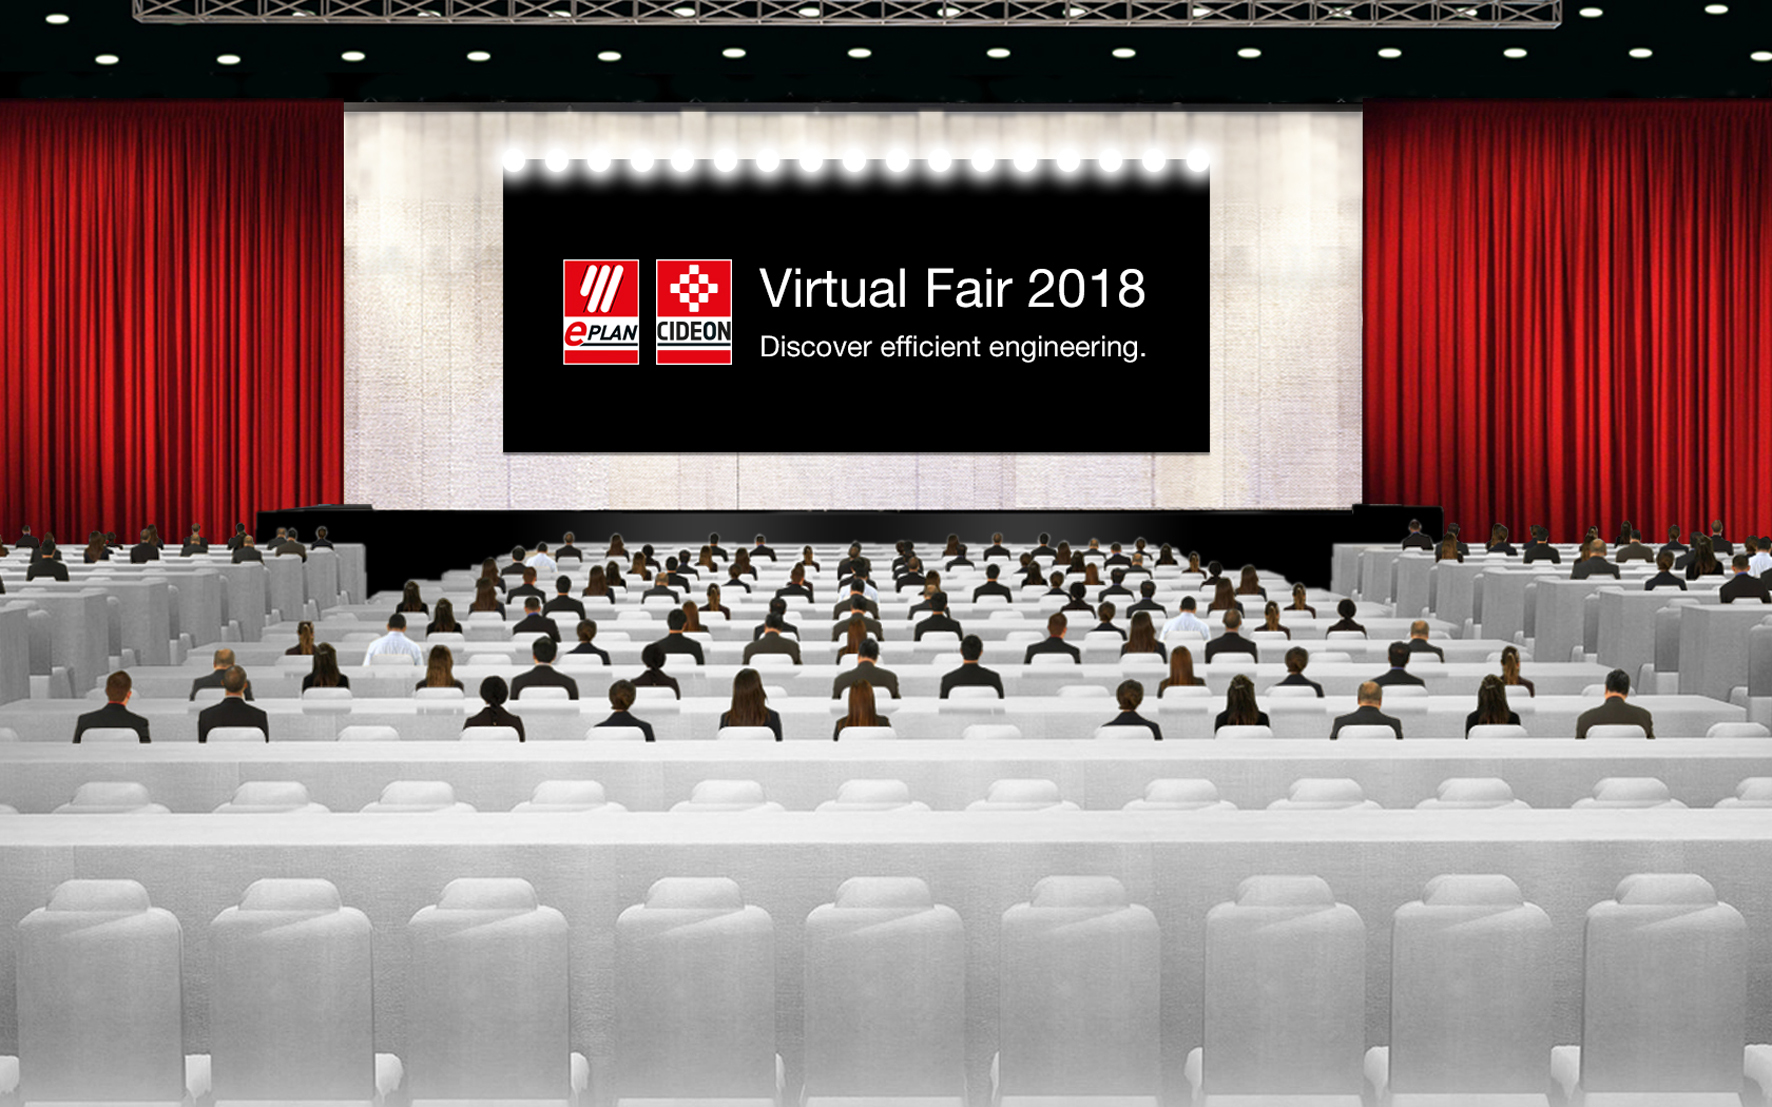 Feria de Ingeniería 4.0: EPLAN y Cideon abren sus puertas virtuales